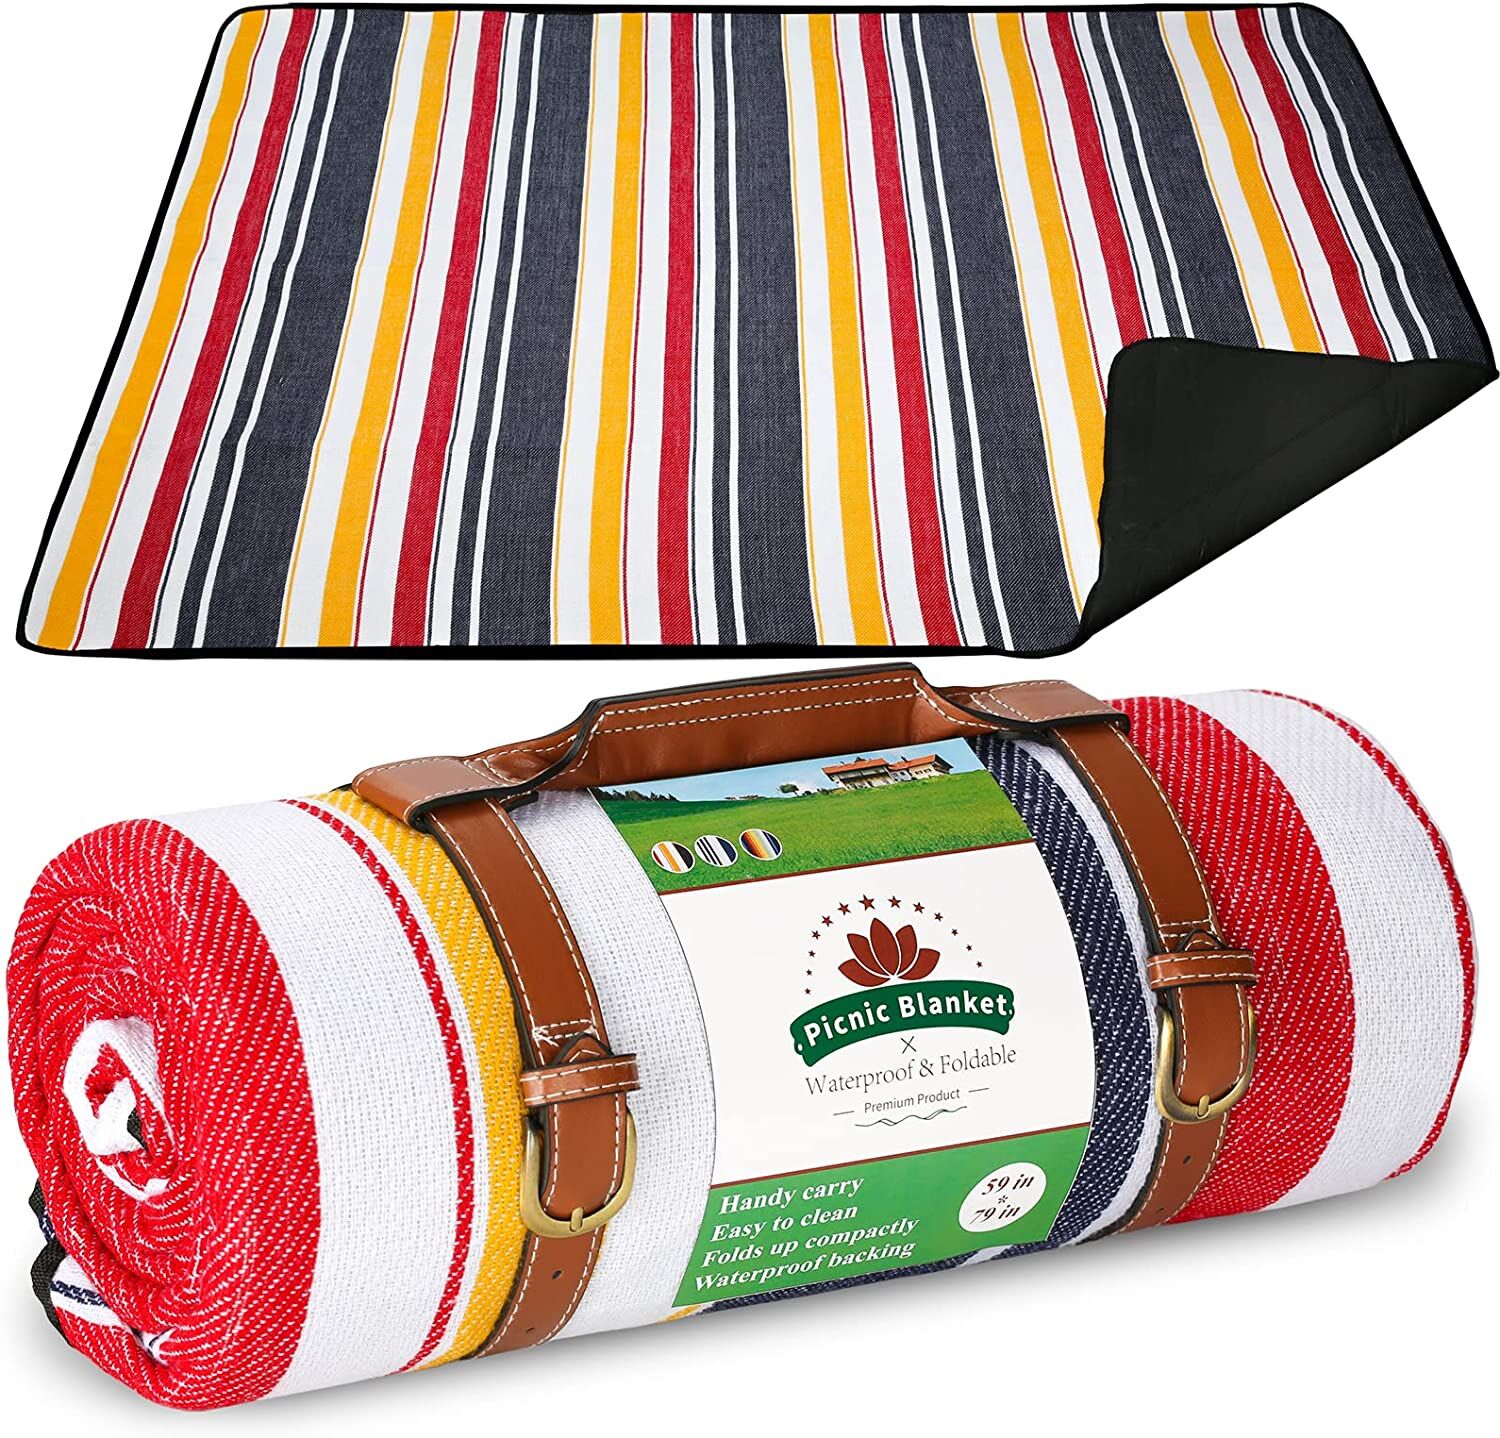 Kaufen Sie China Großhandels-Picknick Decke Matte Picknick-teppich Mit  Lederband Für Camping Leicht Zu Tragen und Picknick Decke  Großhandelsanbietern zu einem Preis von 5.9 USD